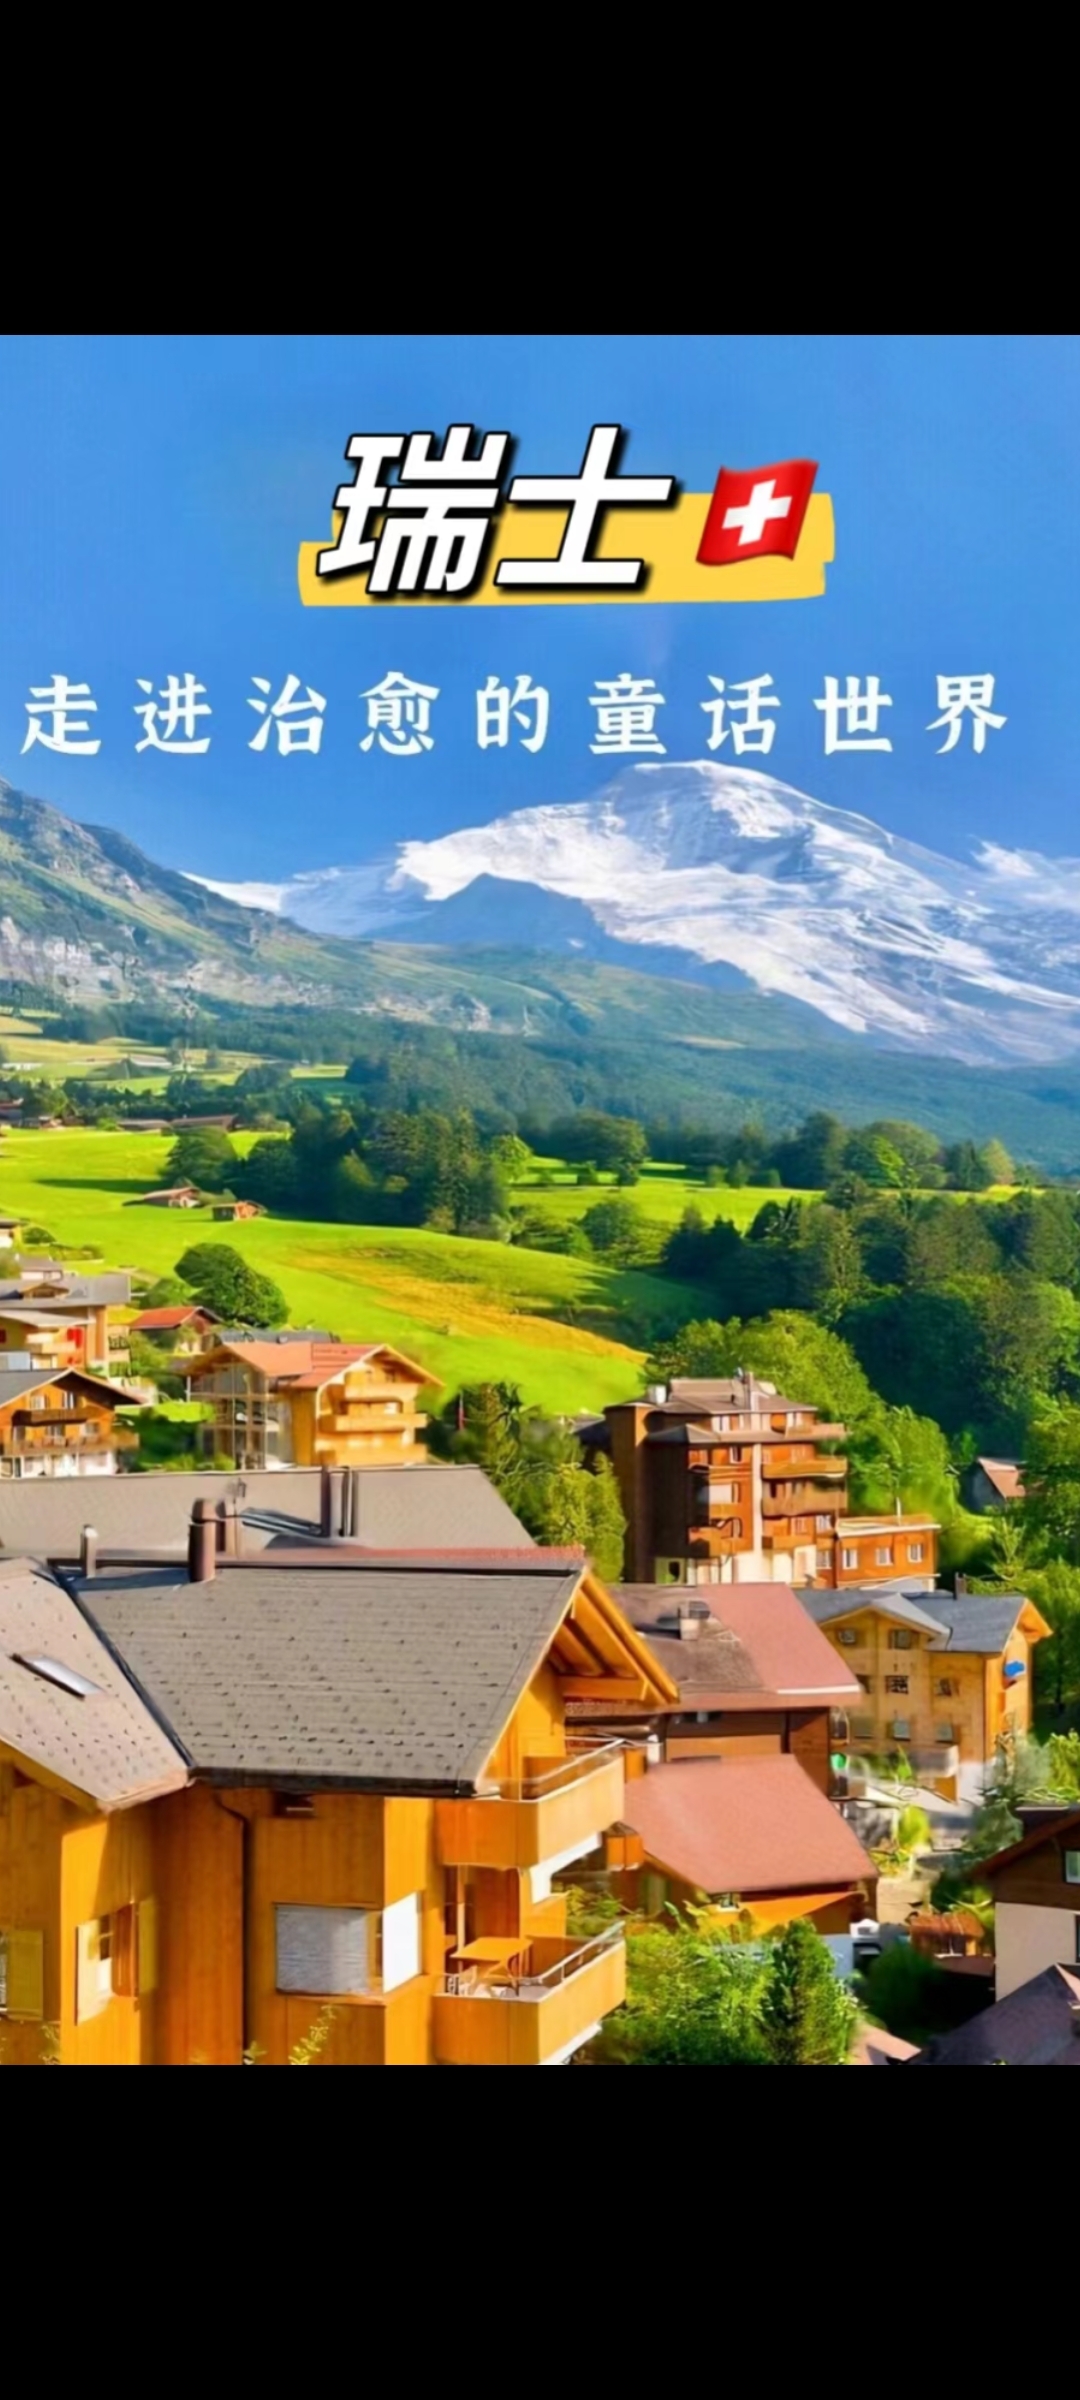 瑞士旅行清单:那些不可错过的地方